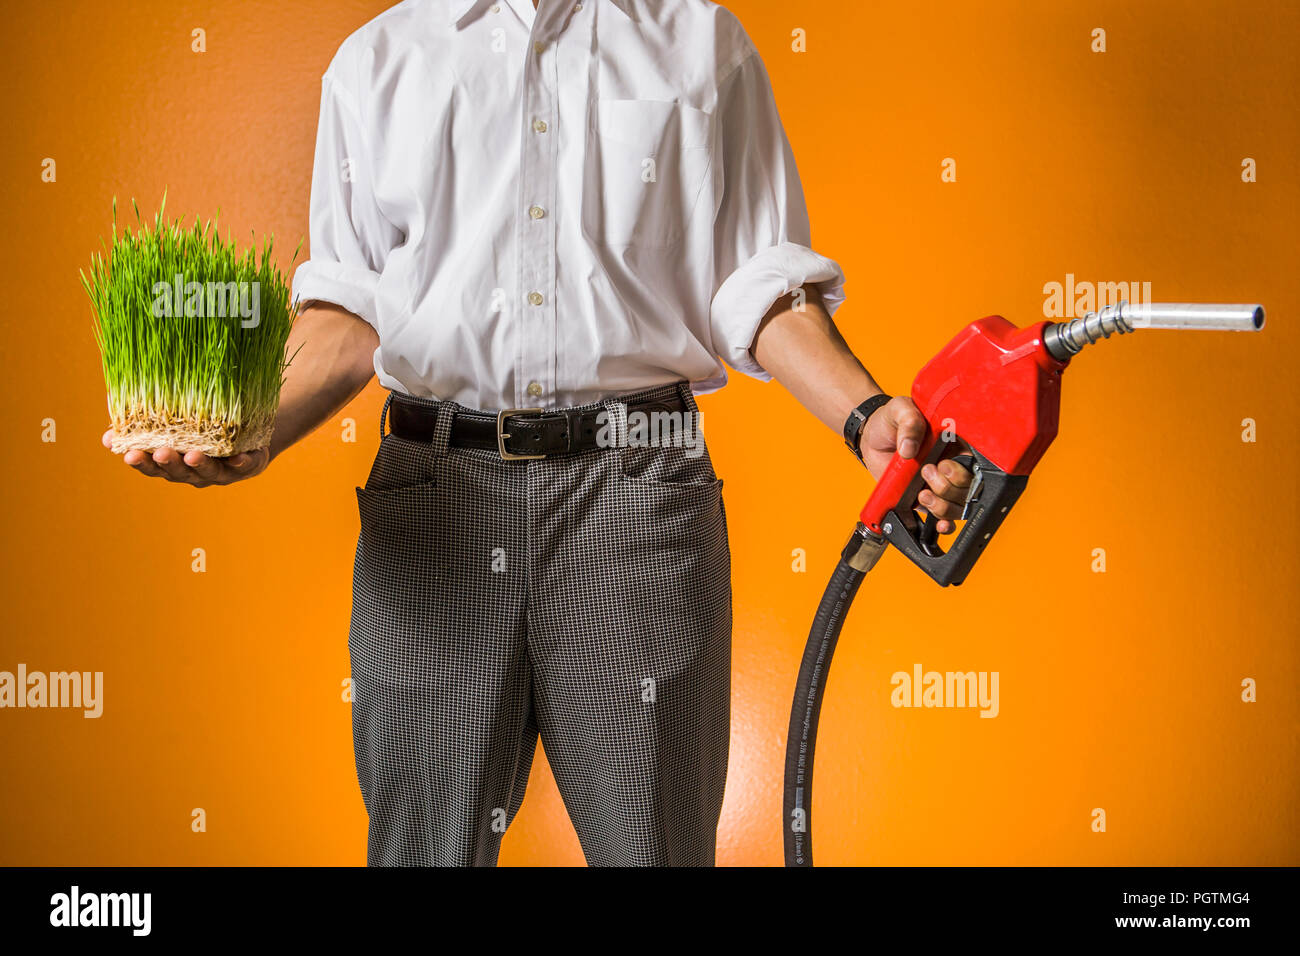 Ein Mann hält eine Flache von Weizen Gras in der einen Hand und eine Benzin Düse in der anderen. Konzept der Biokraftstoffe im Vergleich zu fossilen Brennstoffen. Stockfoto